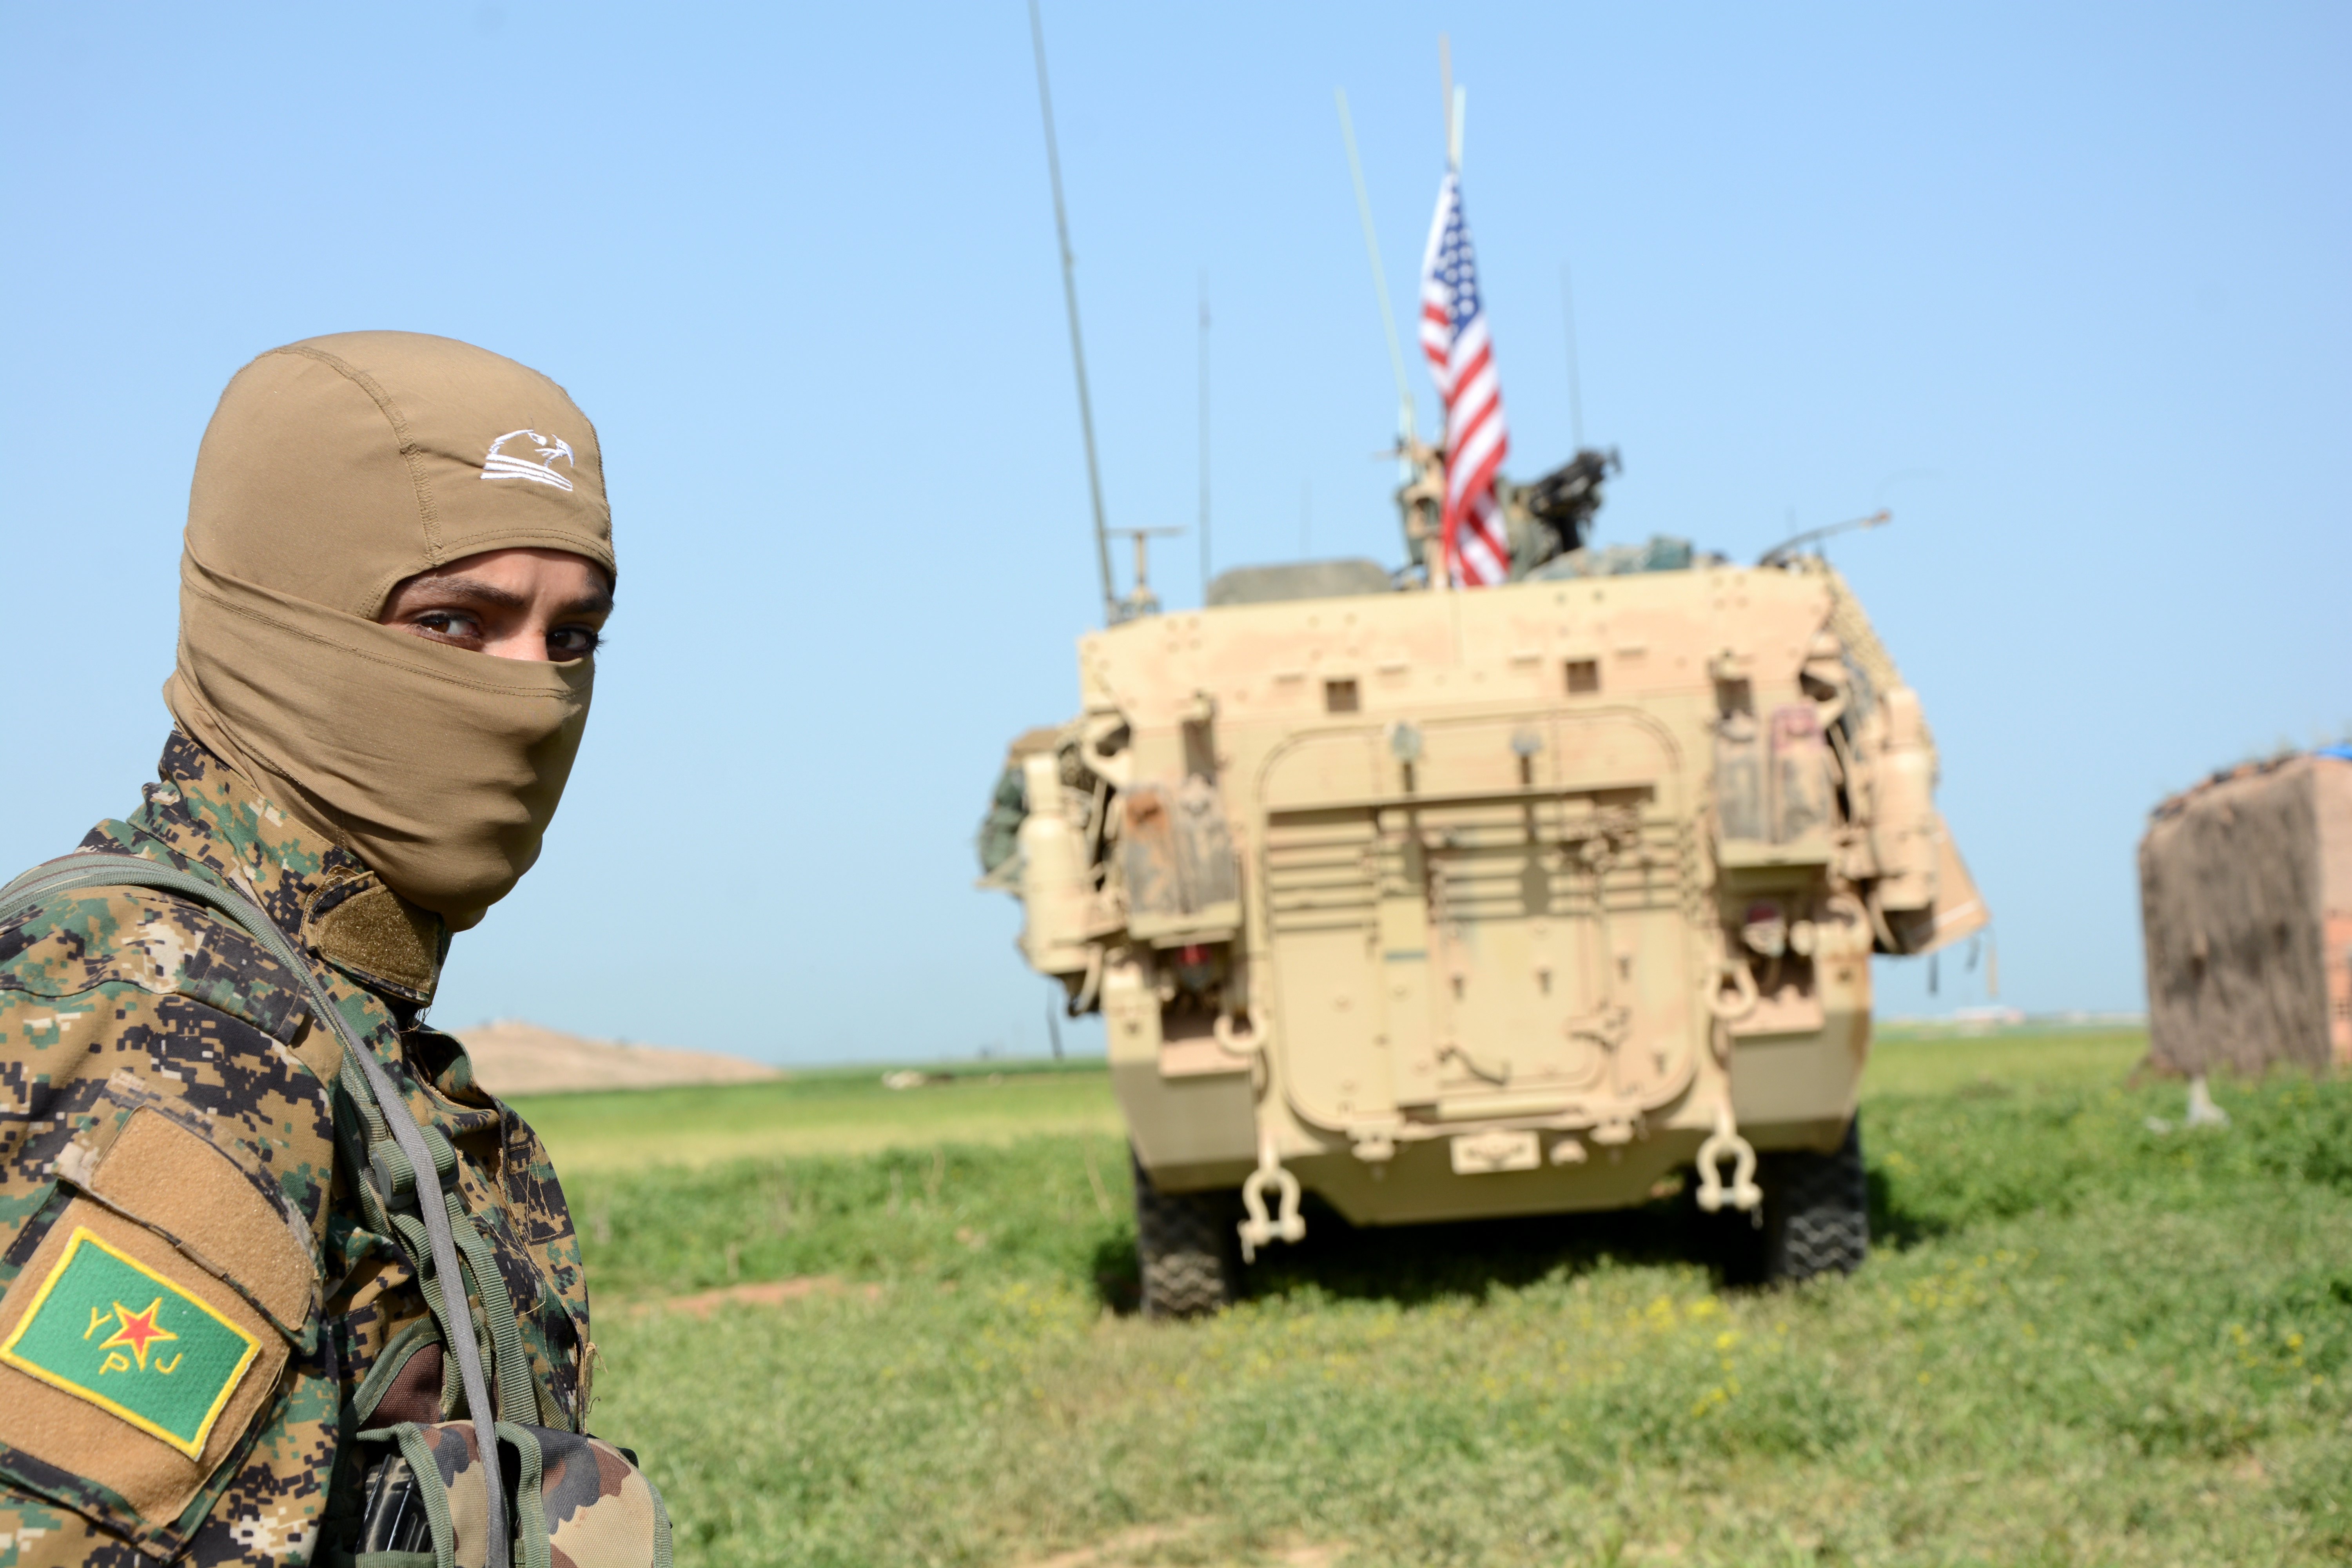 Τουρκικά ΜΜΕ «αποκαλύπτουν» θέσεις αμερικανικών δυνάμεων στη Συρία